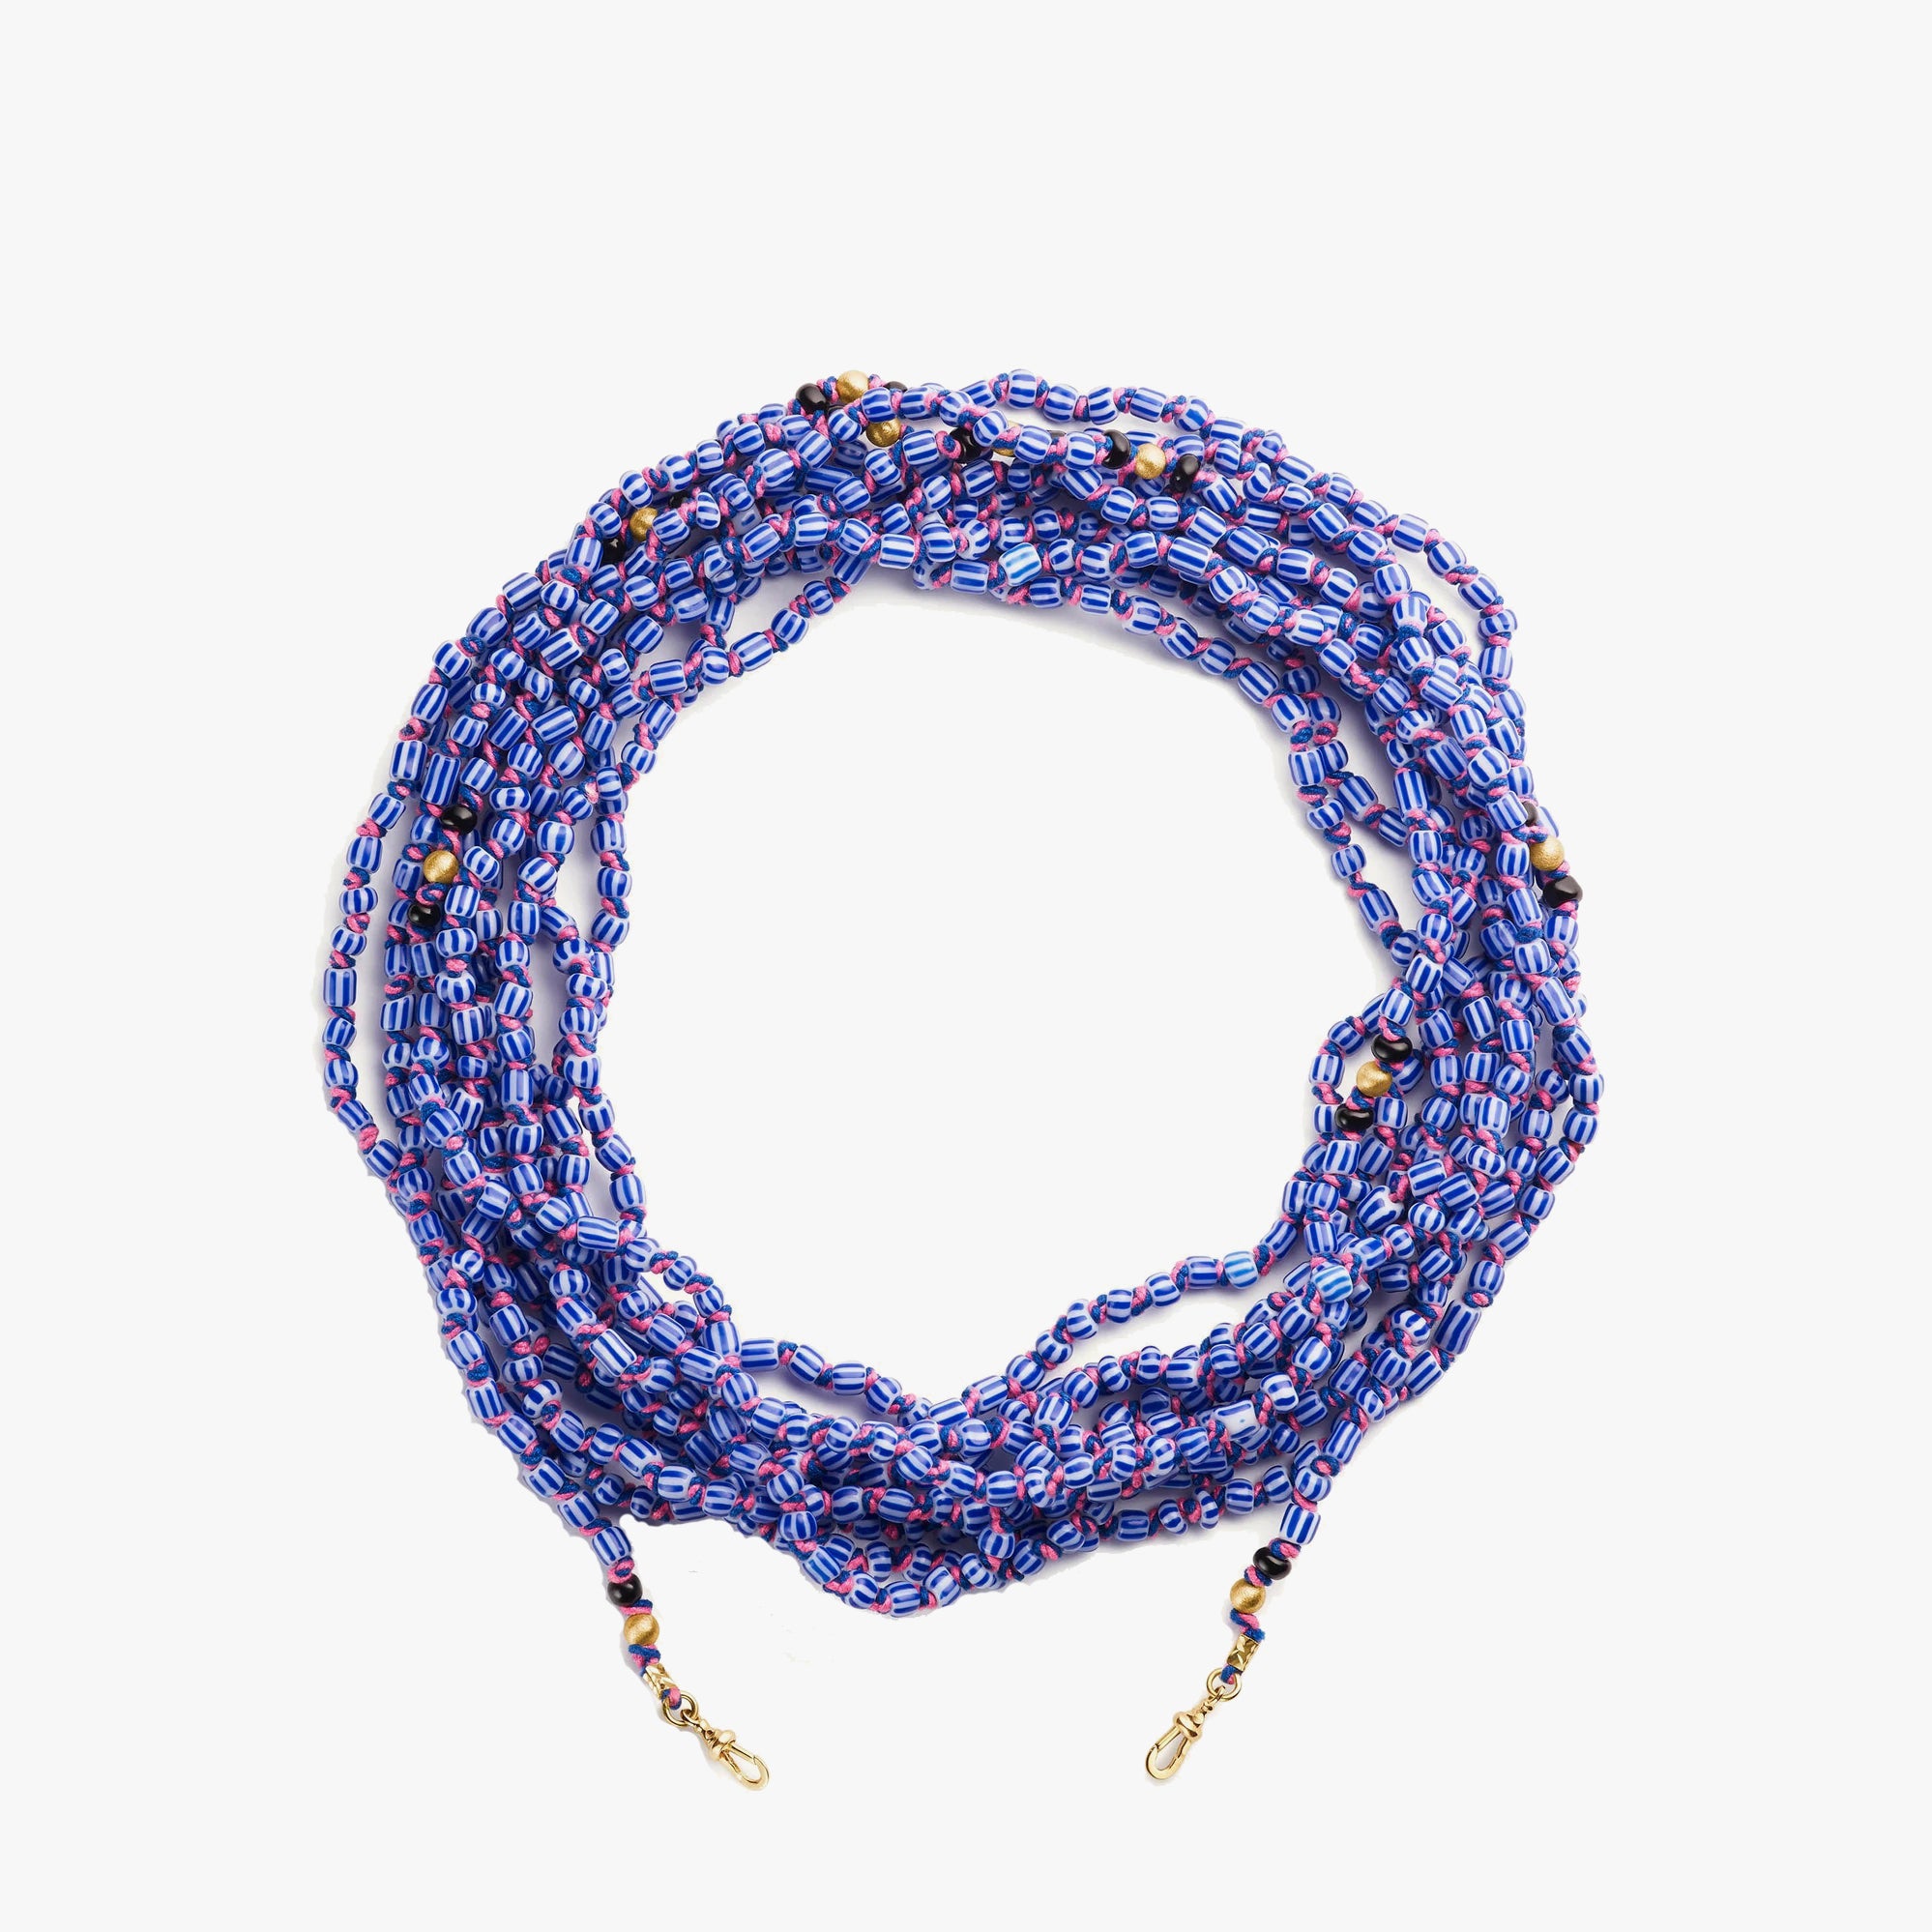 Blue and white Ghana Mauli beads